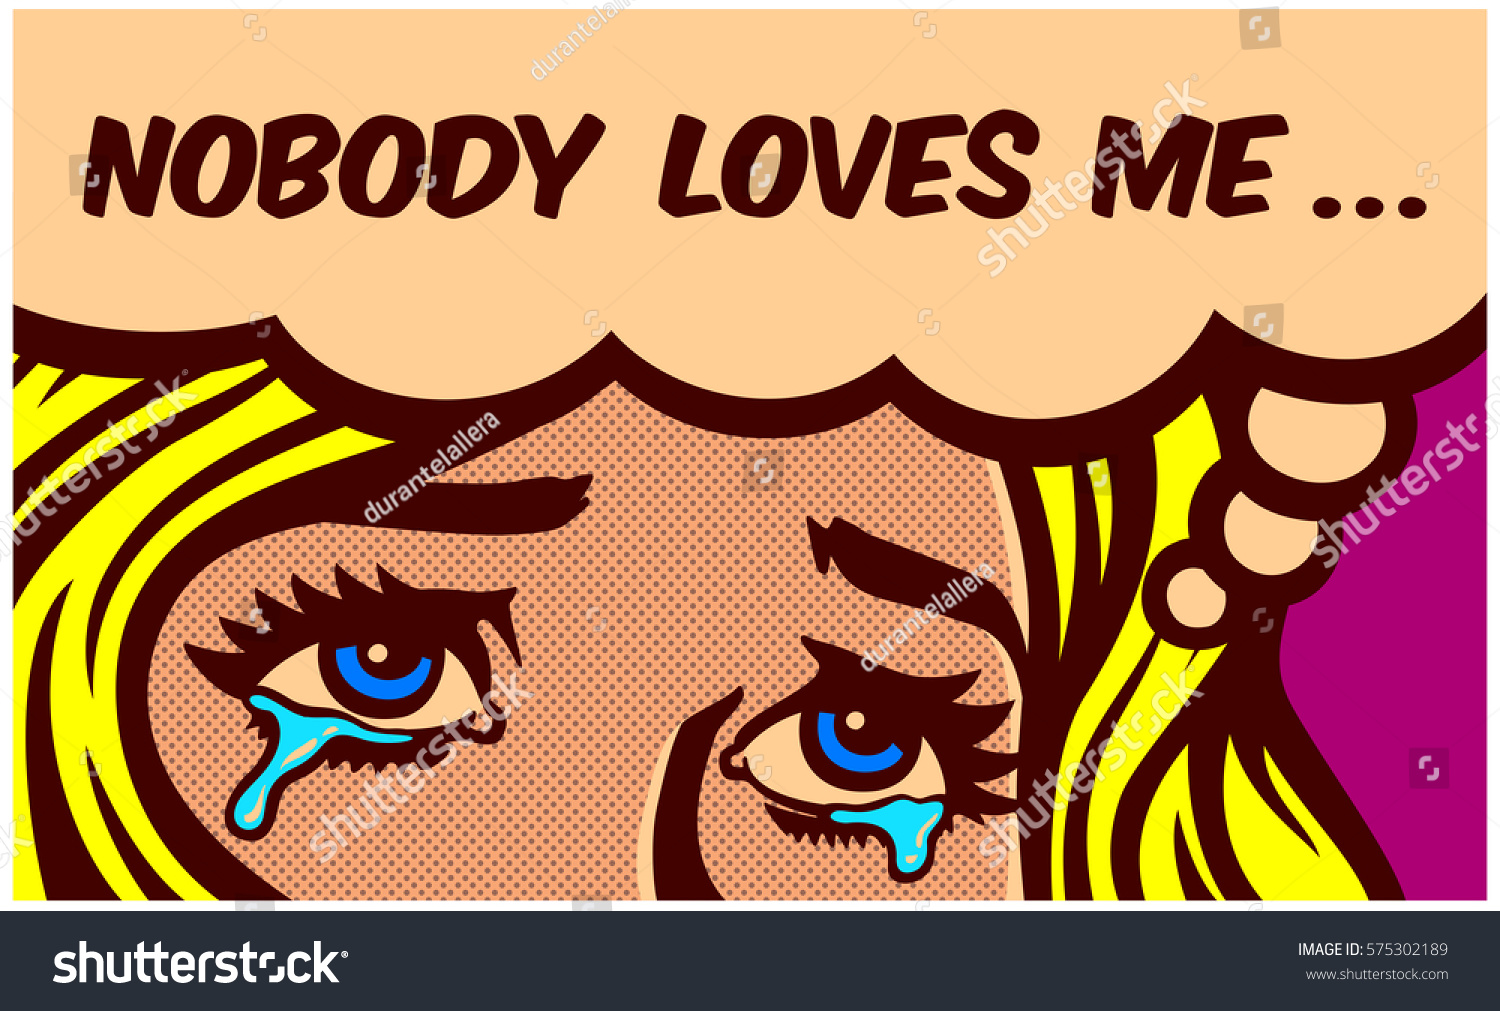 誰も私を愛してない 寂しさに泣く悲しい心のない一人の女の子の涙を流すポップアート型漫画本パネルベクター画像壁デザインイラスト のベクター画像素材 ロイヤリティフリー